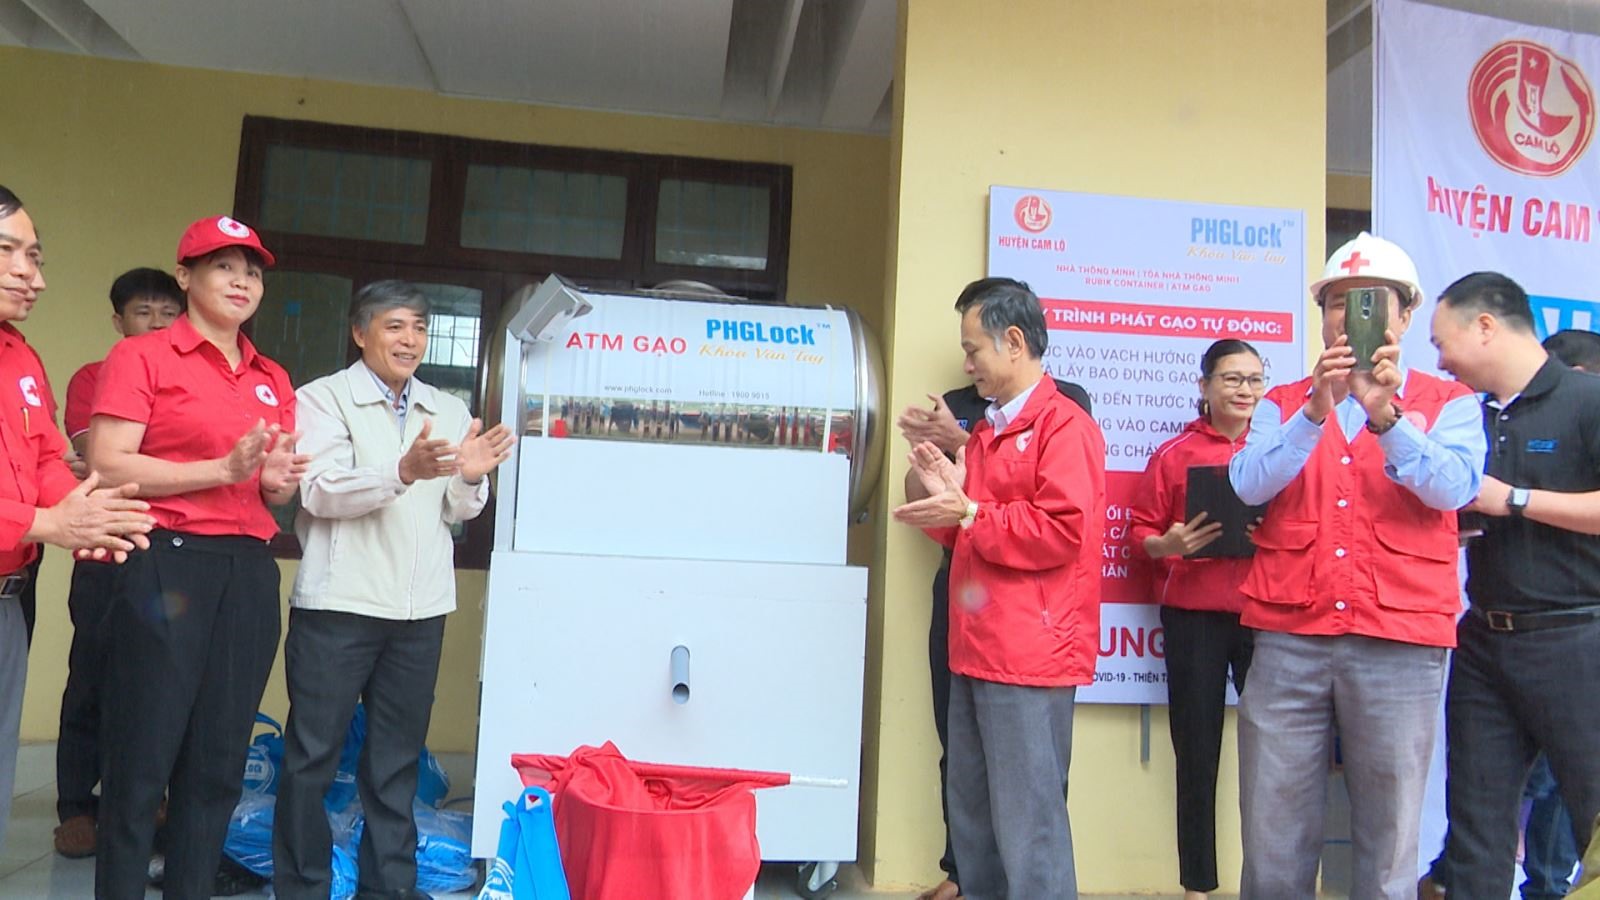 Khai trương ATM gạo miễn phí tại huyện Cam Lộ